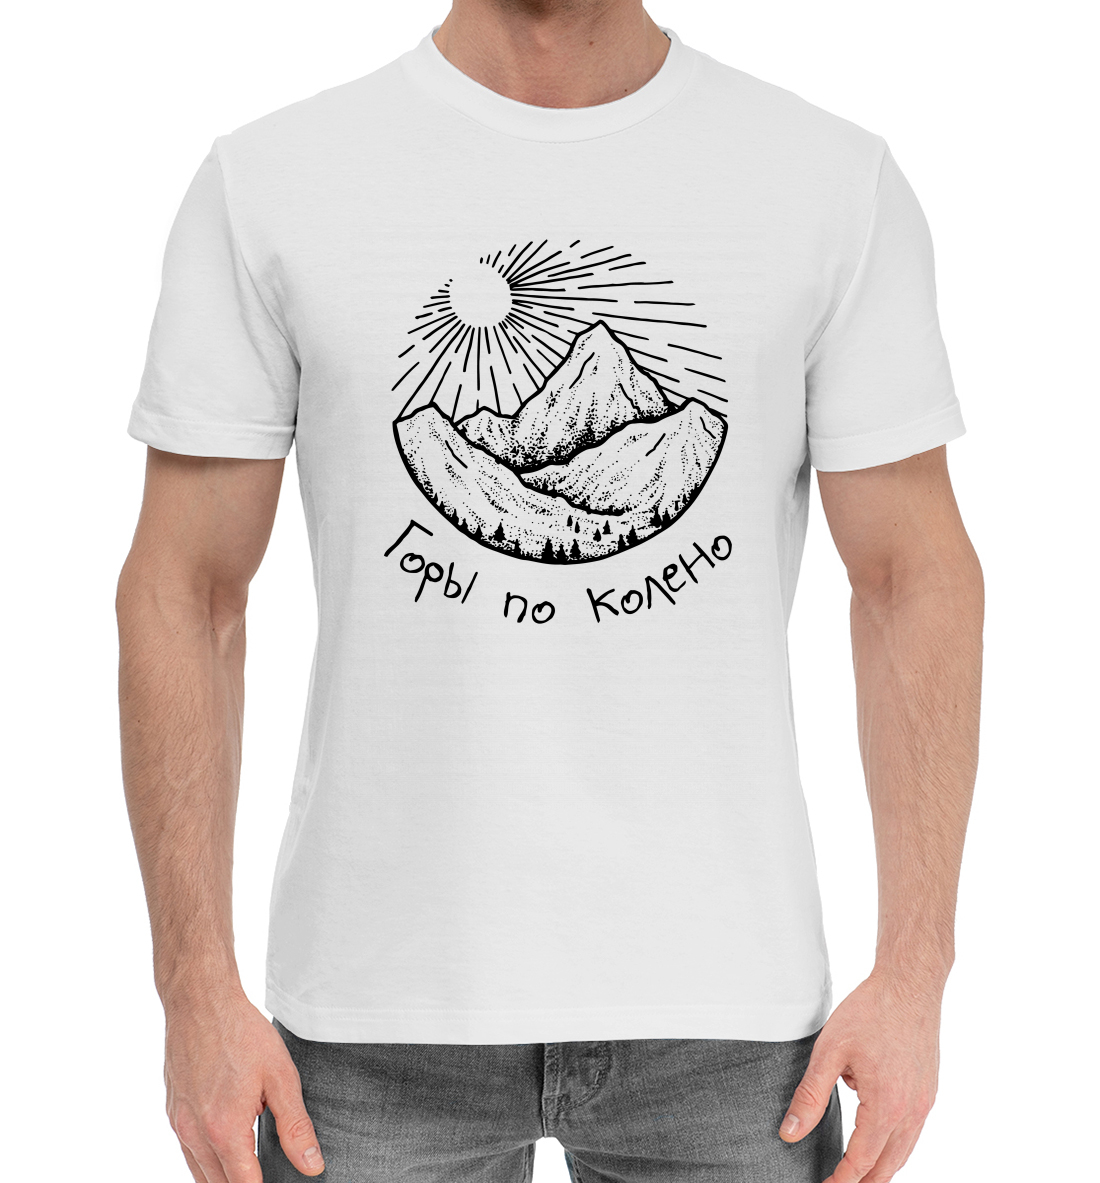 Мужская Хлопковая футболка с надписью Горы по колено, артикул NDP-884921-hfu-2mp